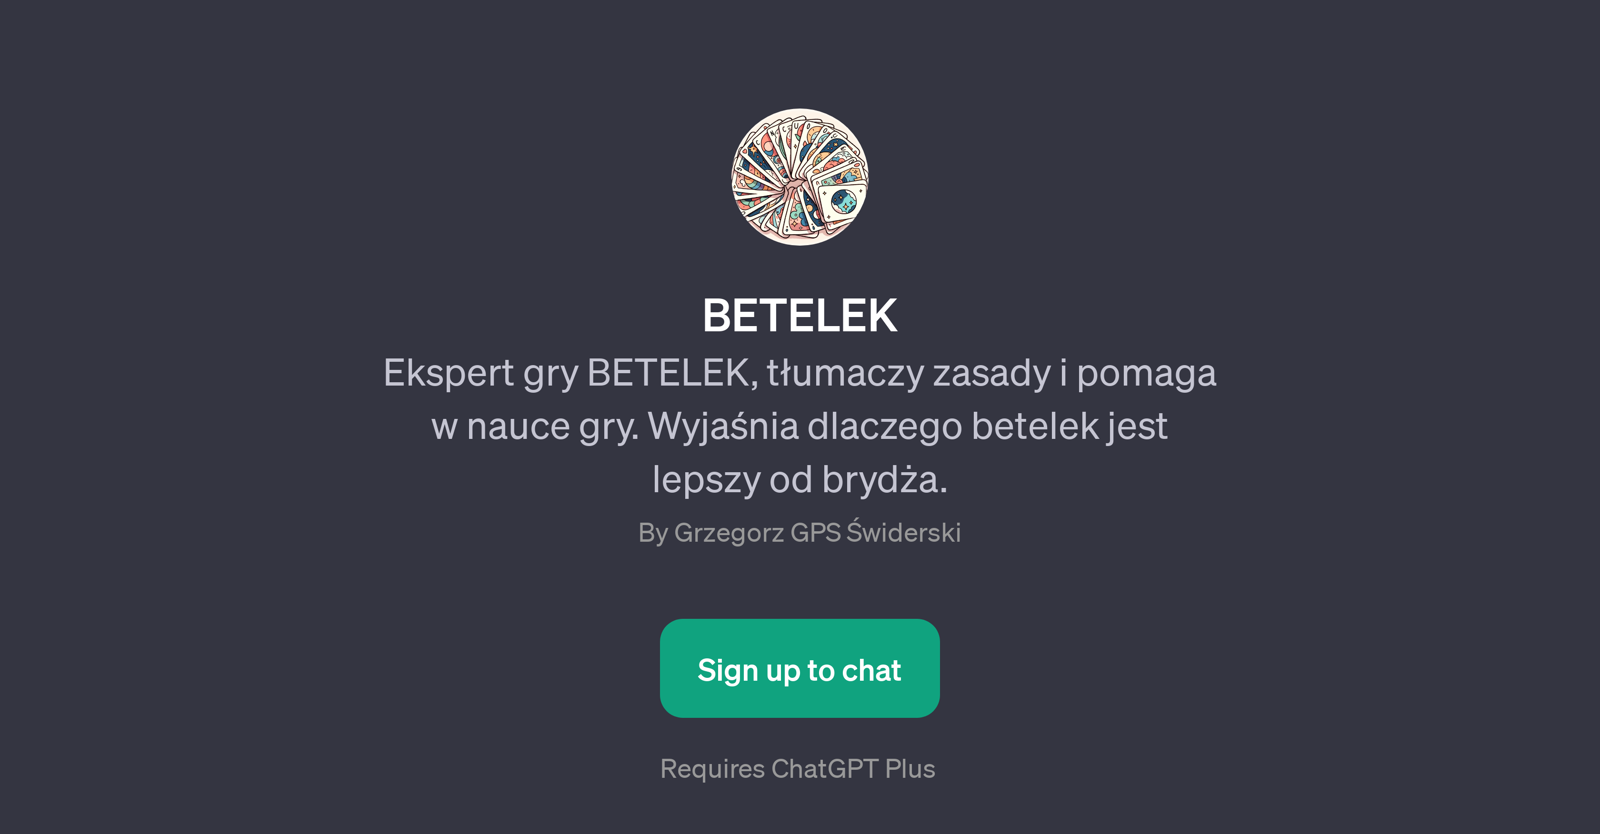 BETELEK website